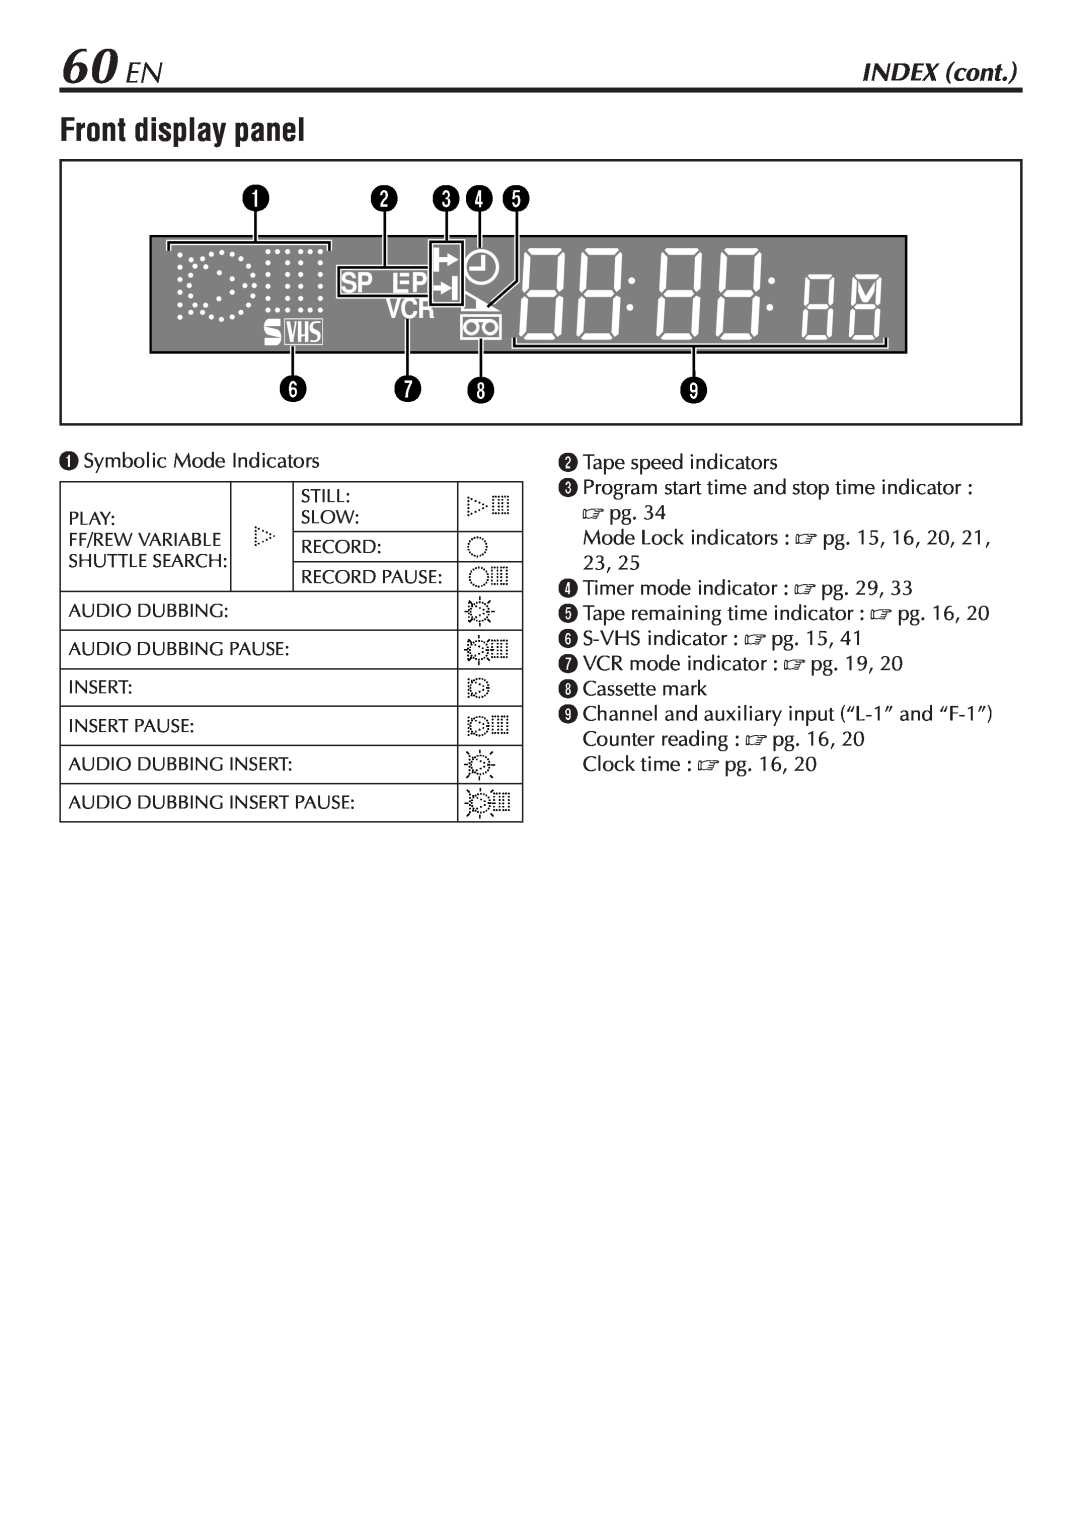 JVC SR-V10U manual 60 EN, Front display panel, INDEX cont 